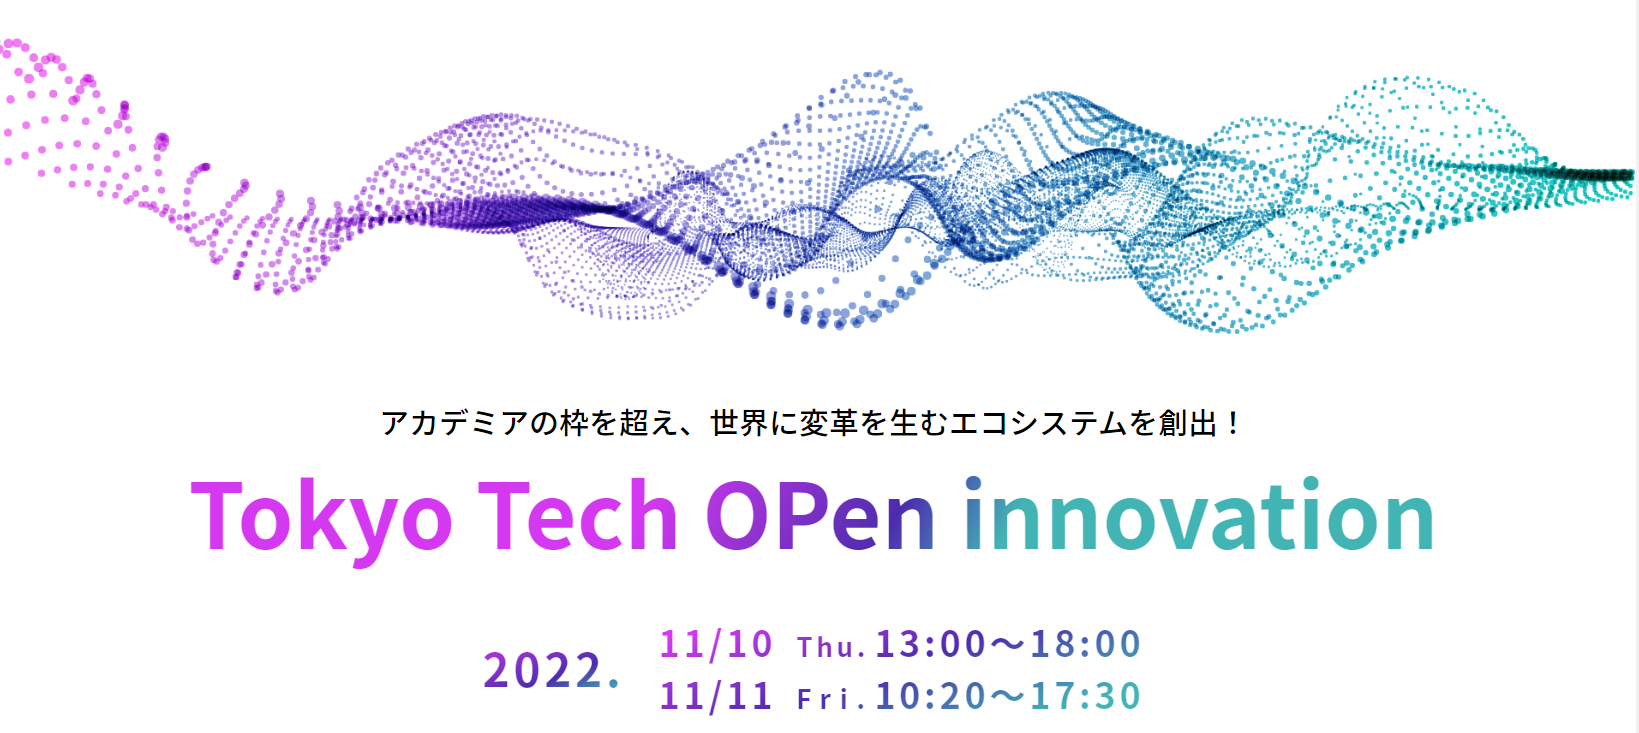 【東工大最大級の産学連携イベント TTOP2022開催のお知らせ】Tokyo Tech OPen innovation（TTOP）2022